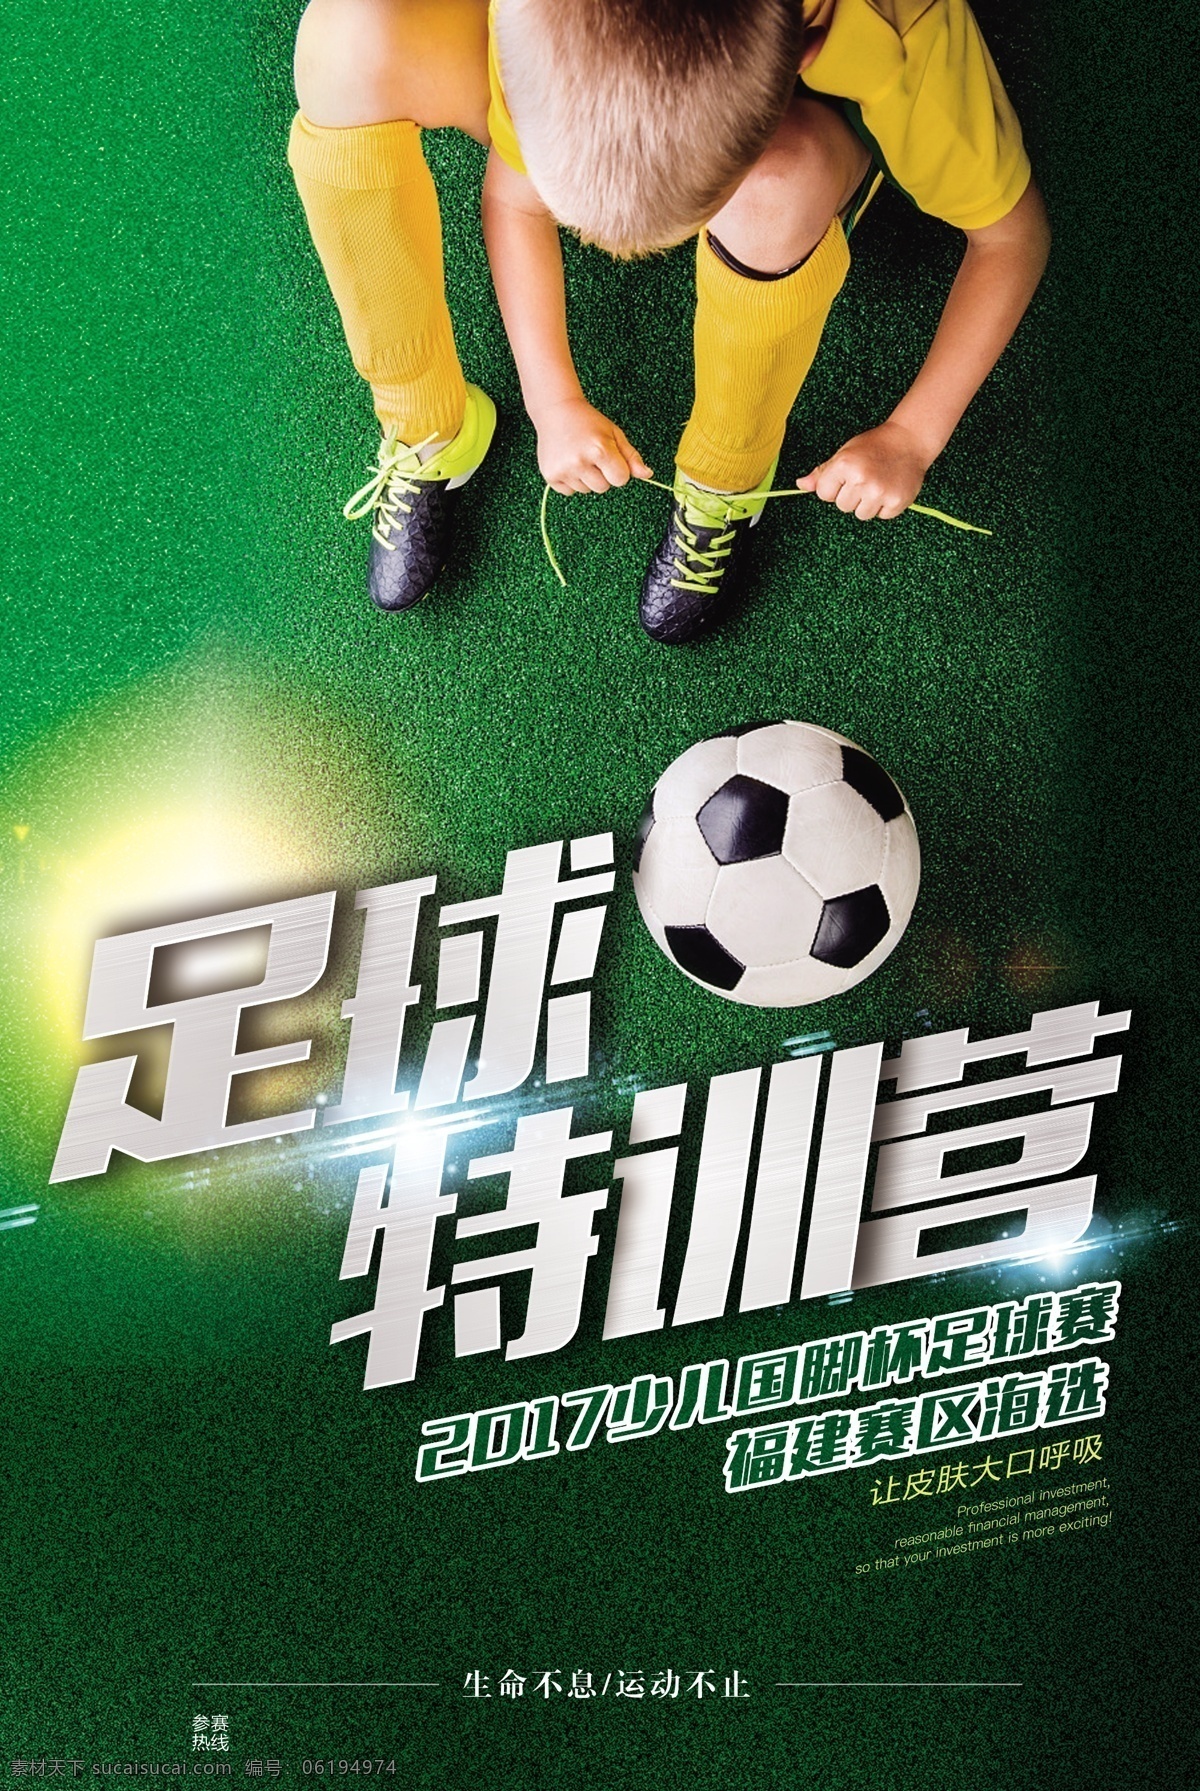 足球 特 训 营 活动 宣传海报 素材图片 特训营 宣传 海报